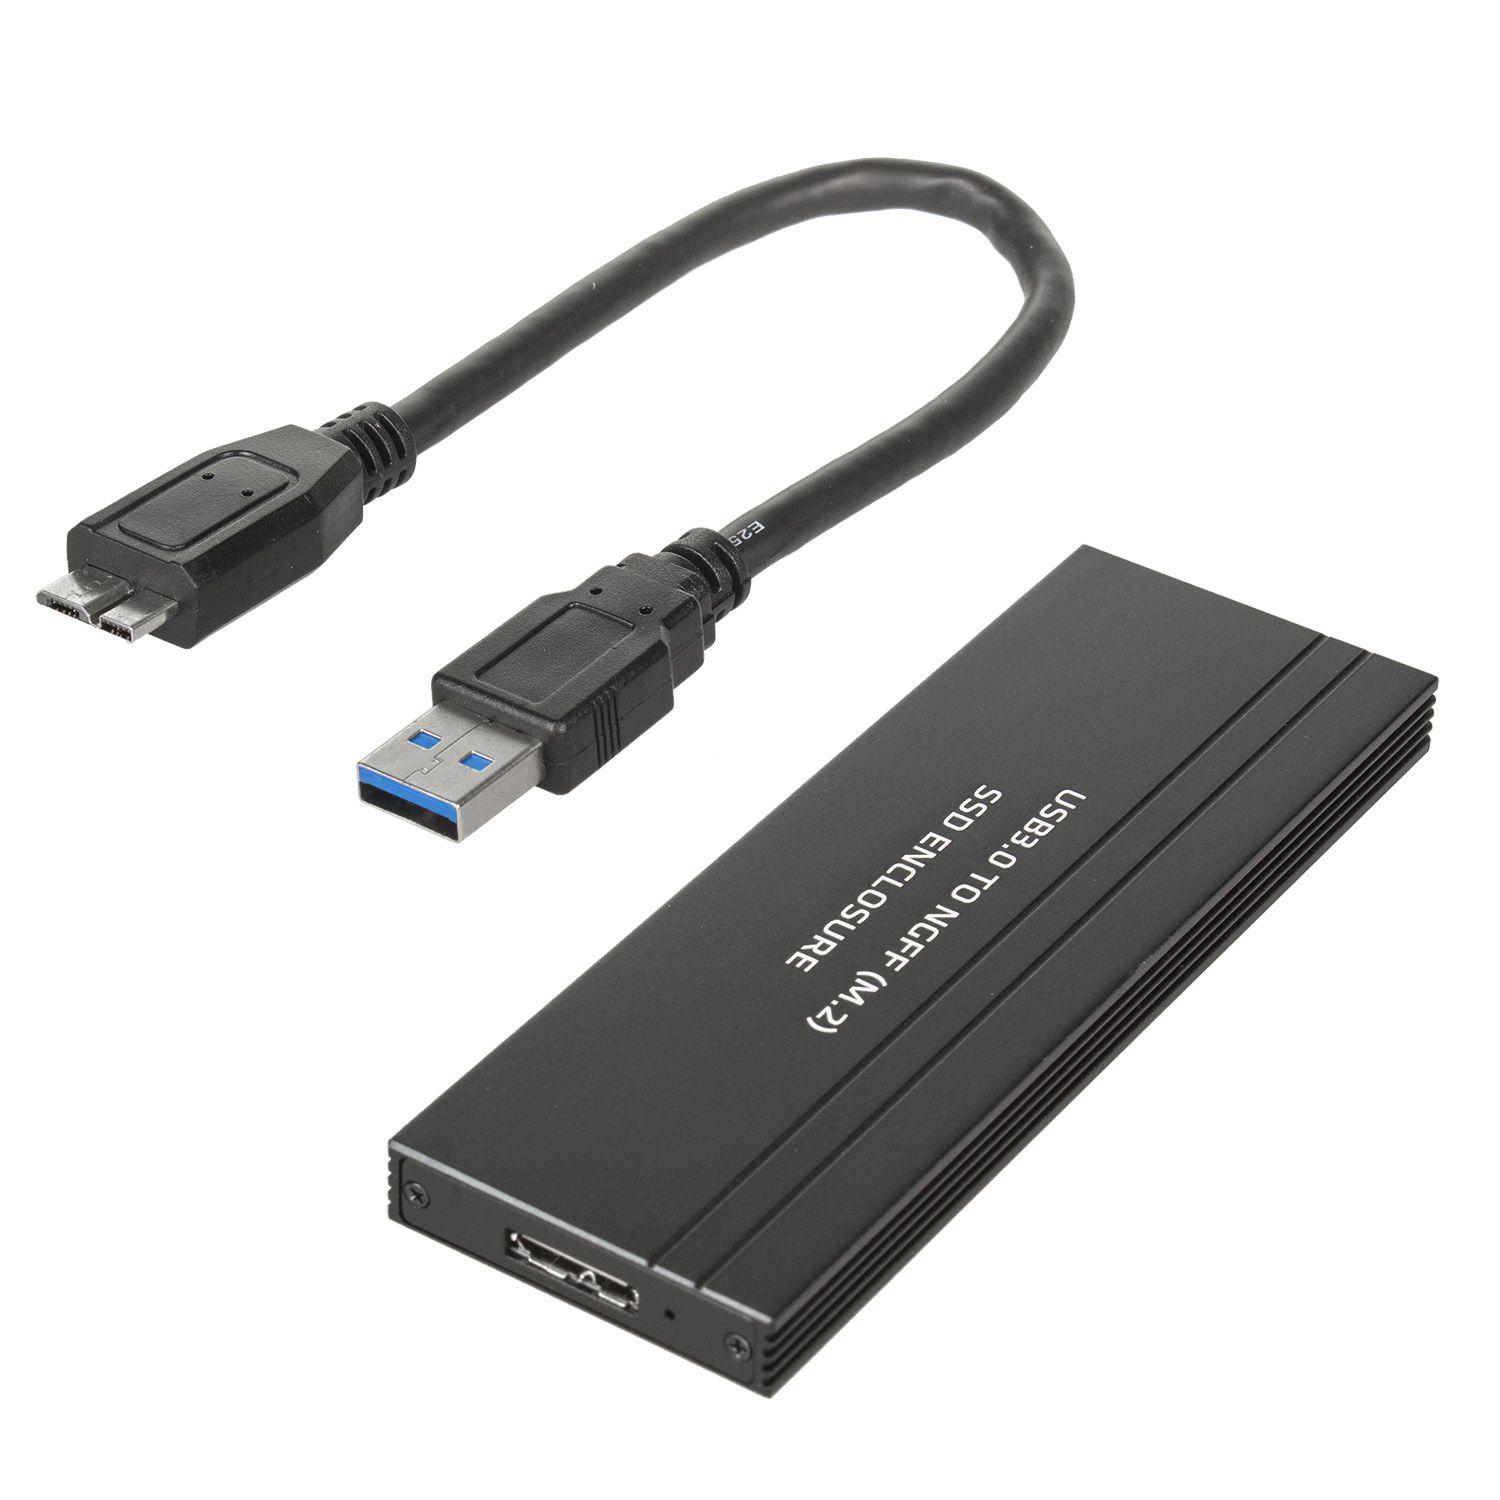 MACLEAN OBUDOWA DYSKU SSD M.2 NGFF USB 3.0 MCE582